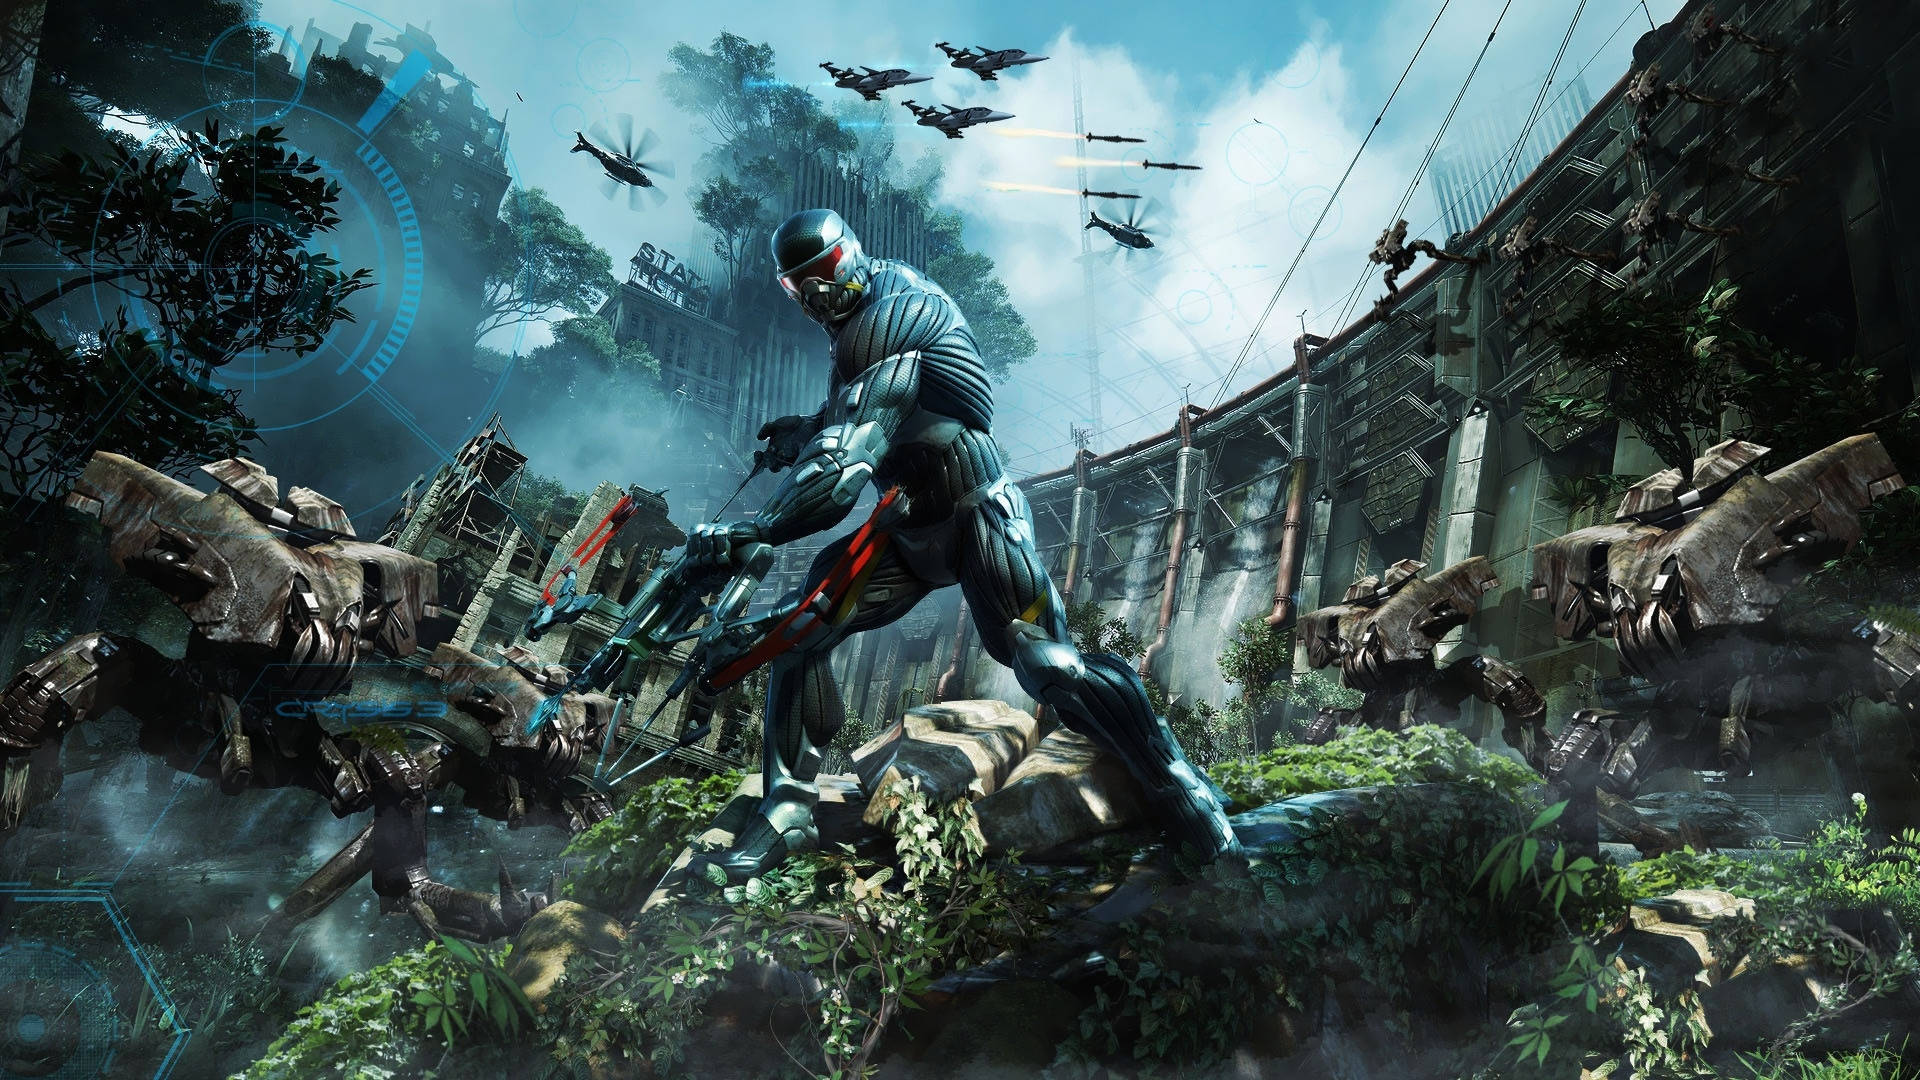 Tag kampen mod de fremmede invaderer i Crysis Remastered og redd menneskeheden! Wallpaper